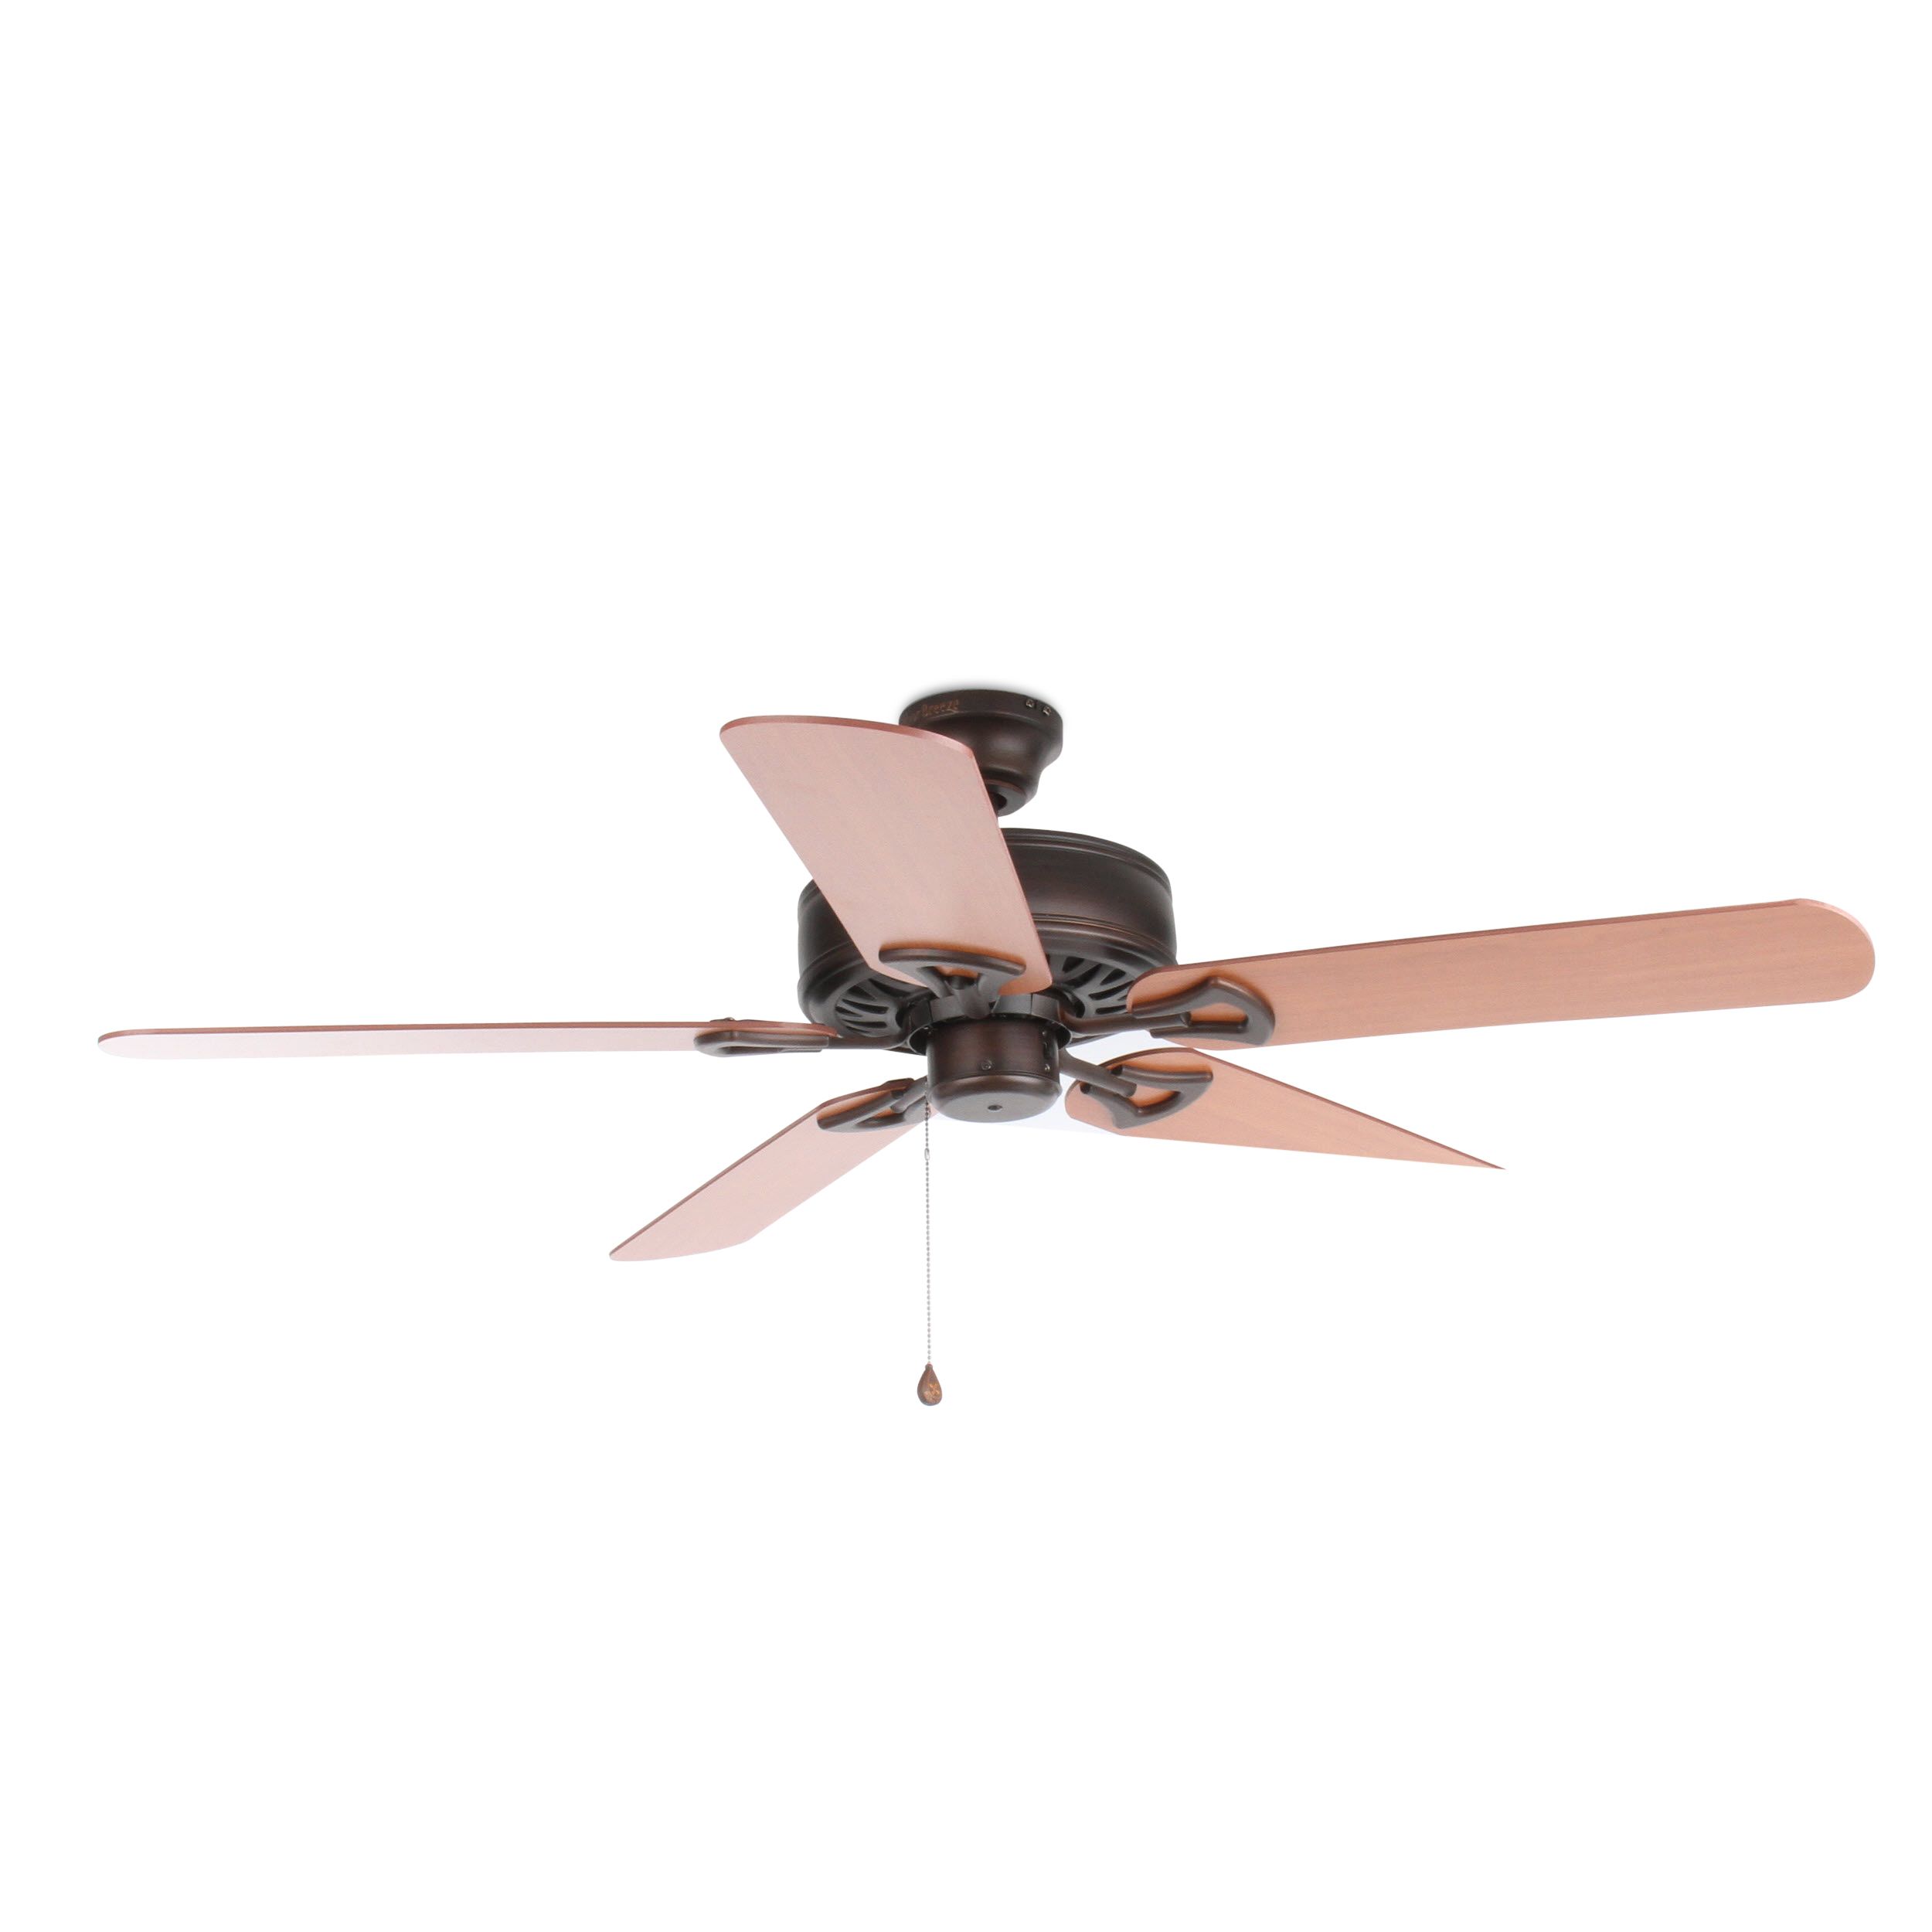 Harbor Breeze Indoor Ceiling Fan 5 Blades Wicker Inlay Cherry Finish Item 124596